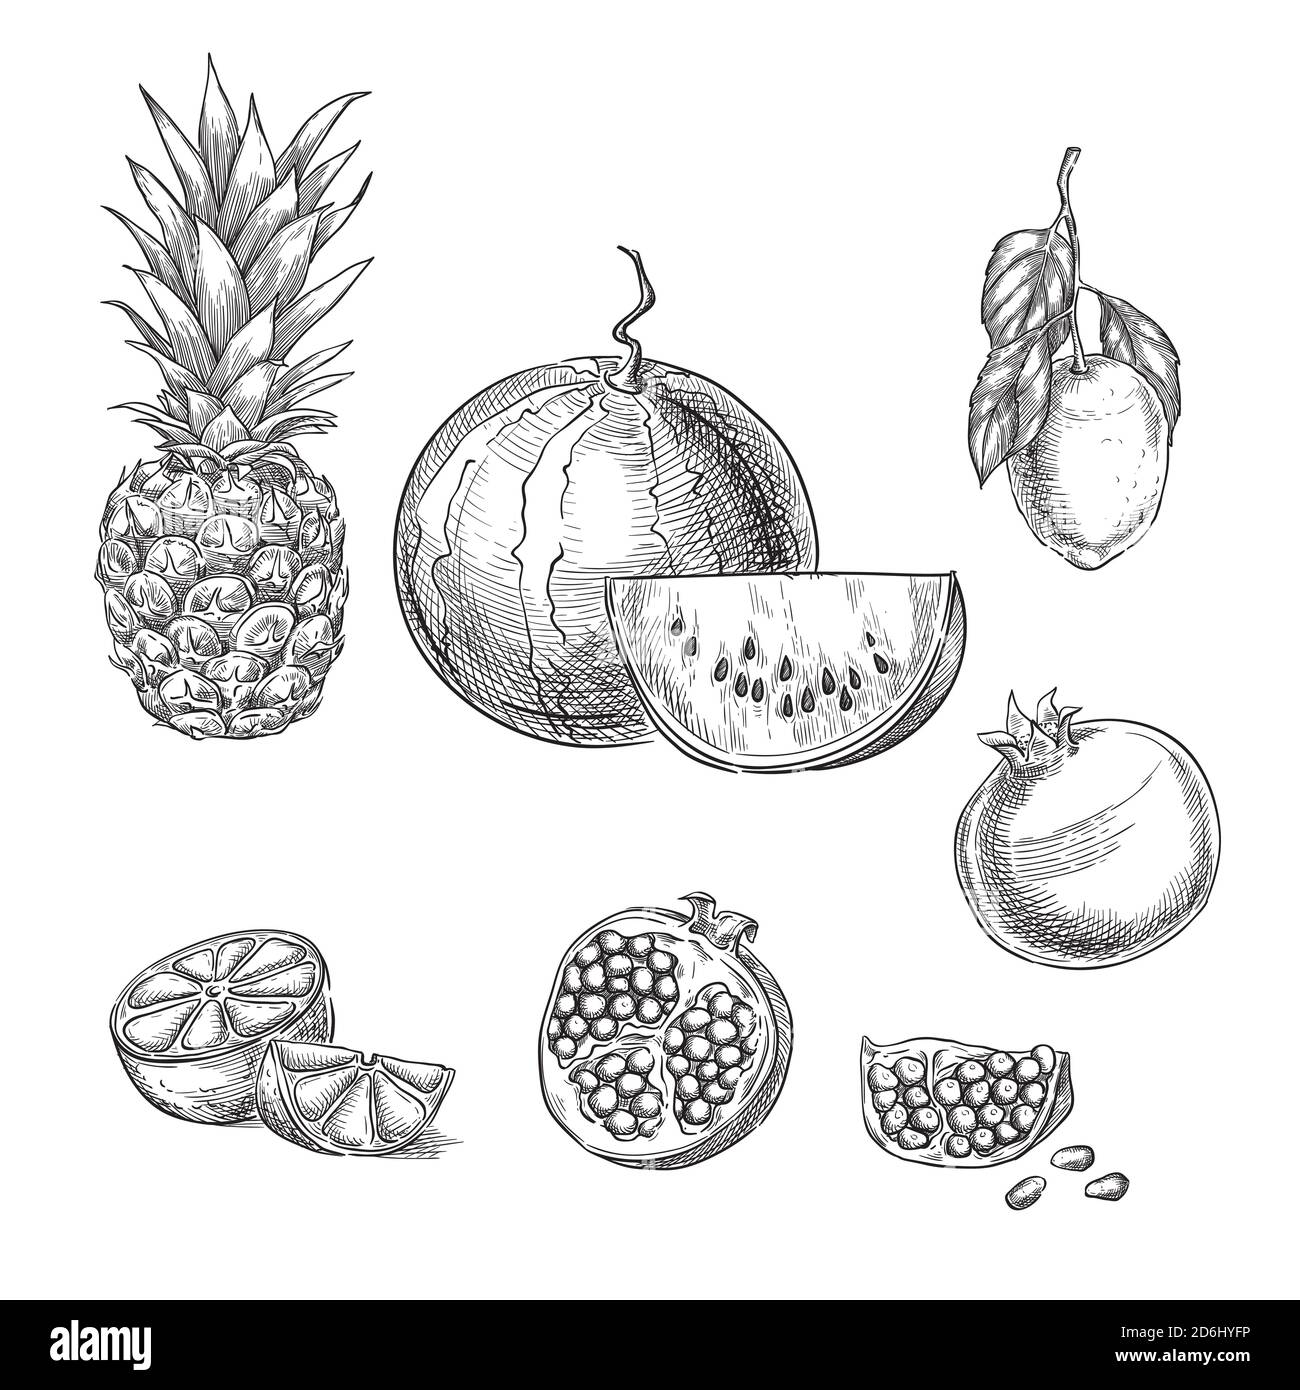 Tropische Früchte Skizze Vektor Illustration. Ananas, Zitrone, Wassermelone, Granatapfel handgezeichnet isolierte Designelemente. Stock Vektor